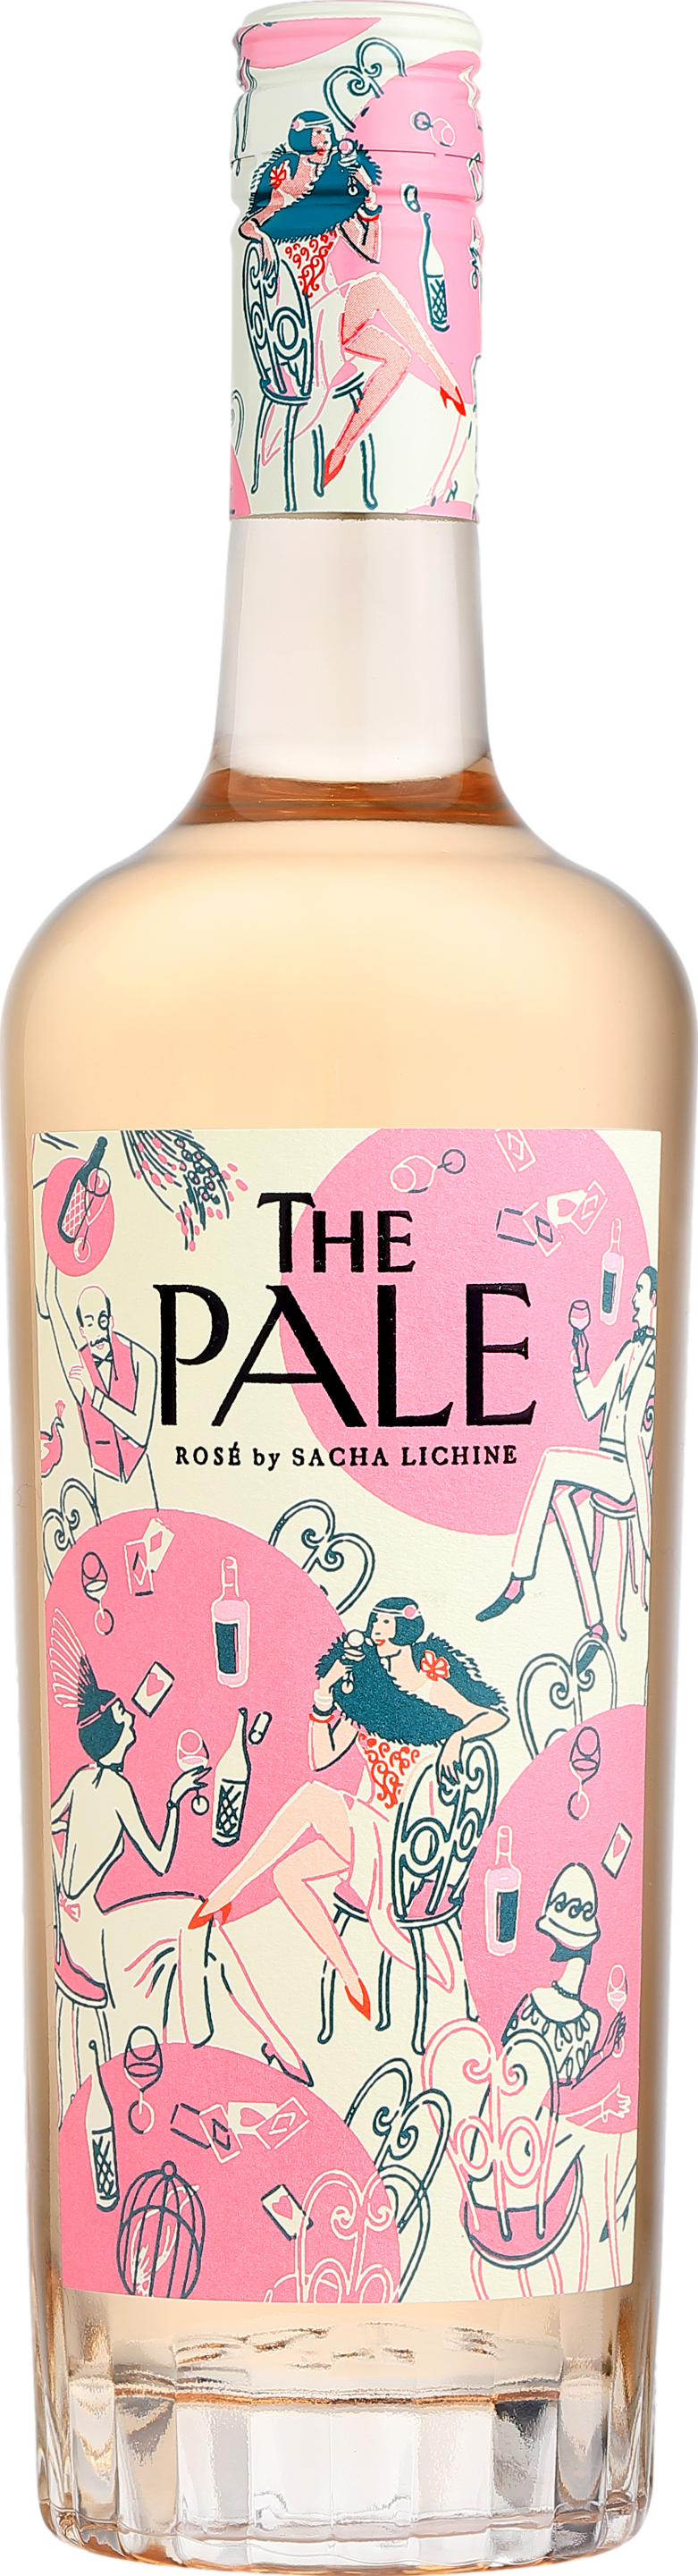 Chateau d'Esclans Sacha Lichine The Pale Rose 2022 Růžové 12.5% 0.75 l